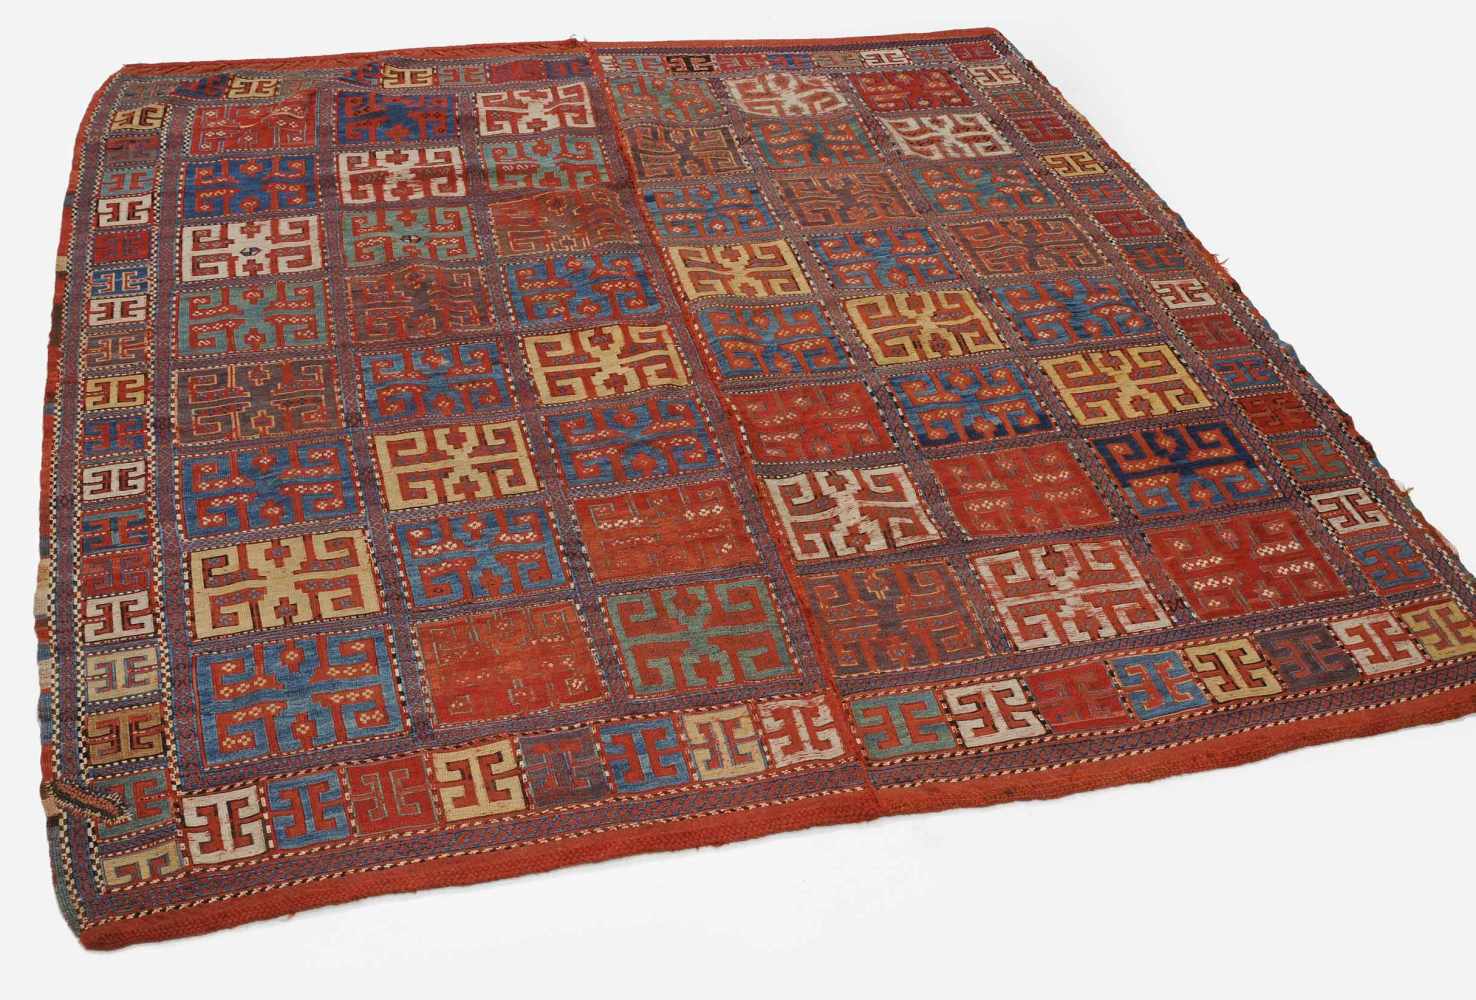 Tchaddah-DeckeS-Kaukasus, um 1900. In 2 Bahnen gefertigte Nadelarbeit auf Flachgewebe. Das